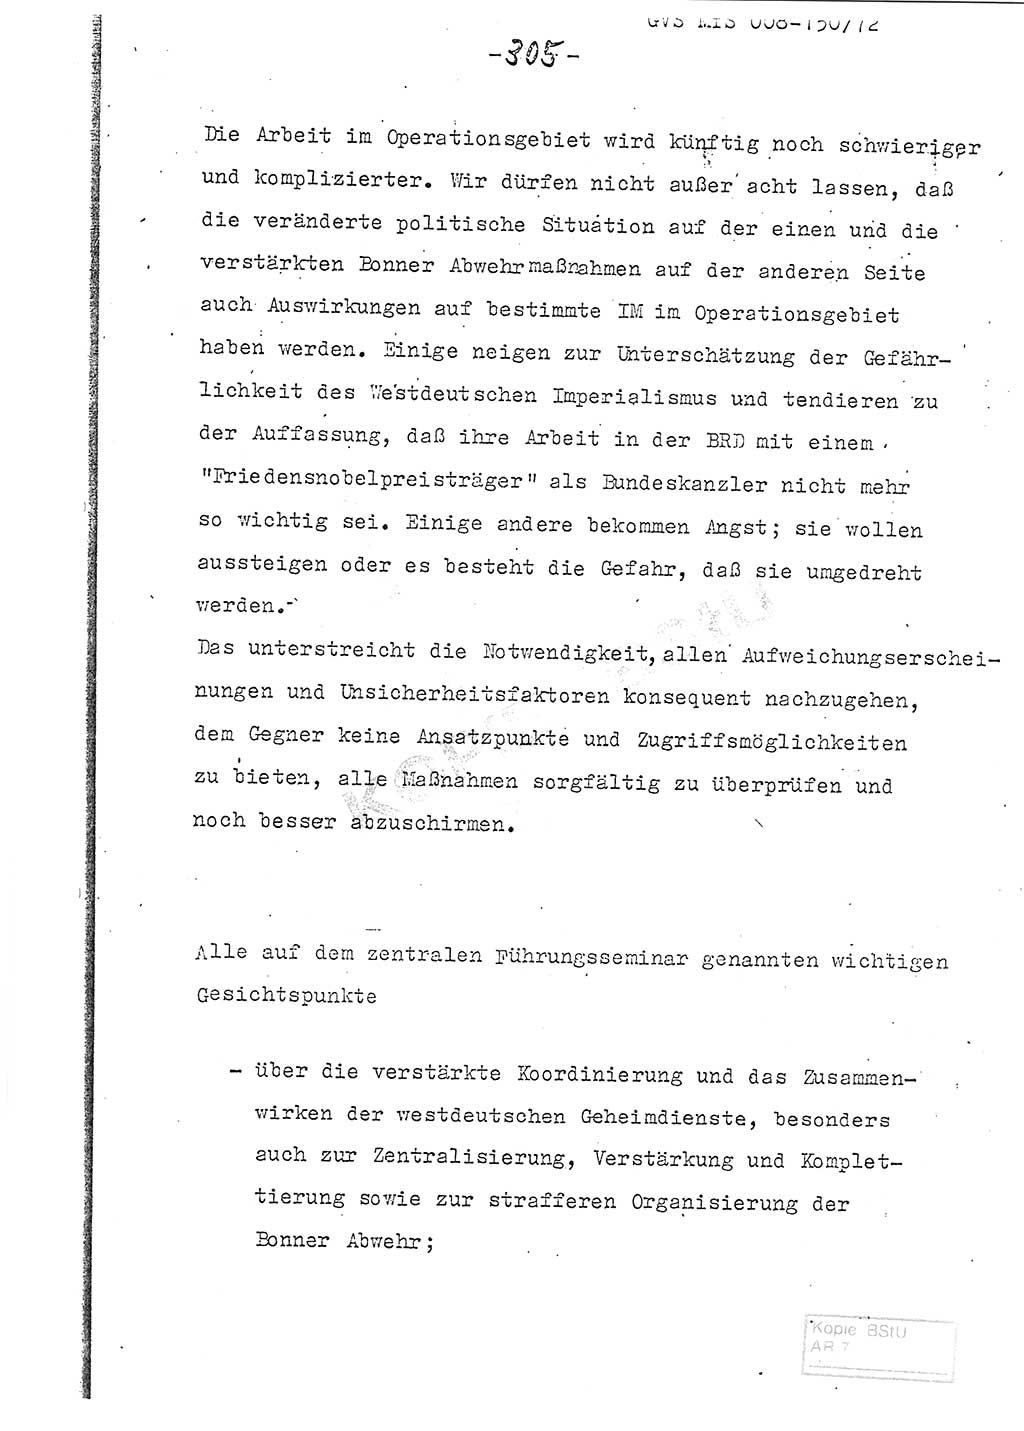 Referat (Entwurf) des Genossen Minister (Generaloberst Erich Mielke) auf der Dienstkonferenz 1972, Ministerium für Staatssicherheit (MfS) [Deutsche Demokratische Republik (DDR)], Der Minister, Geheime Verschlußsache (GVS) 008-150/72, Berlin 25.2.1972, Seite 305 (Ref. Entw. DK MfS DDR Min. GVS 008-150/72 1972, S. 305)